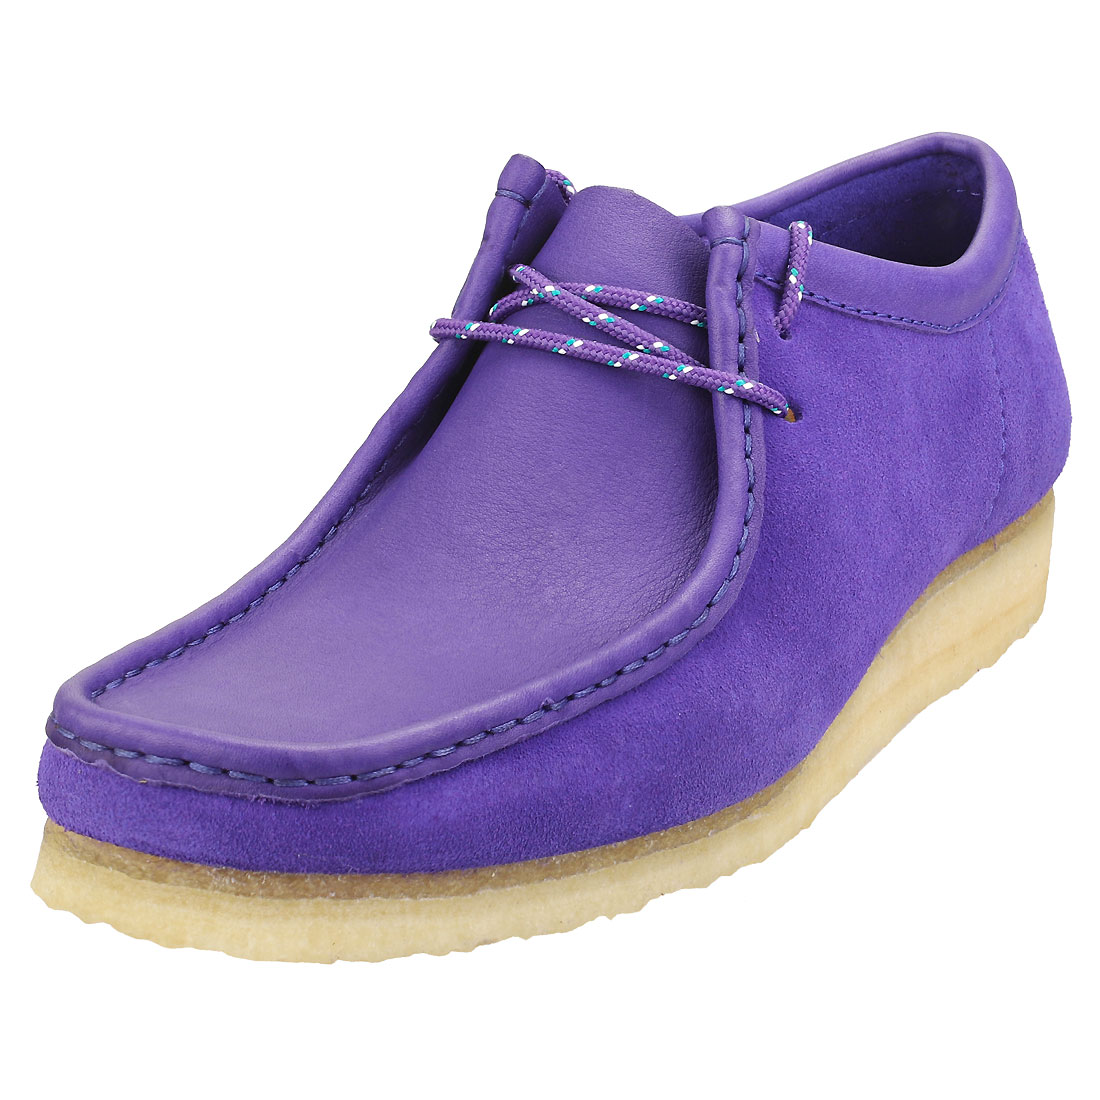 clarks purple shoes